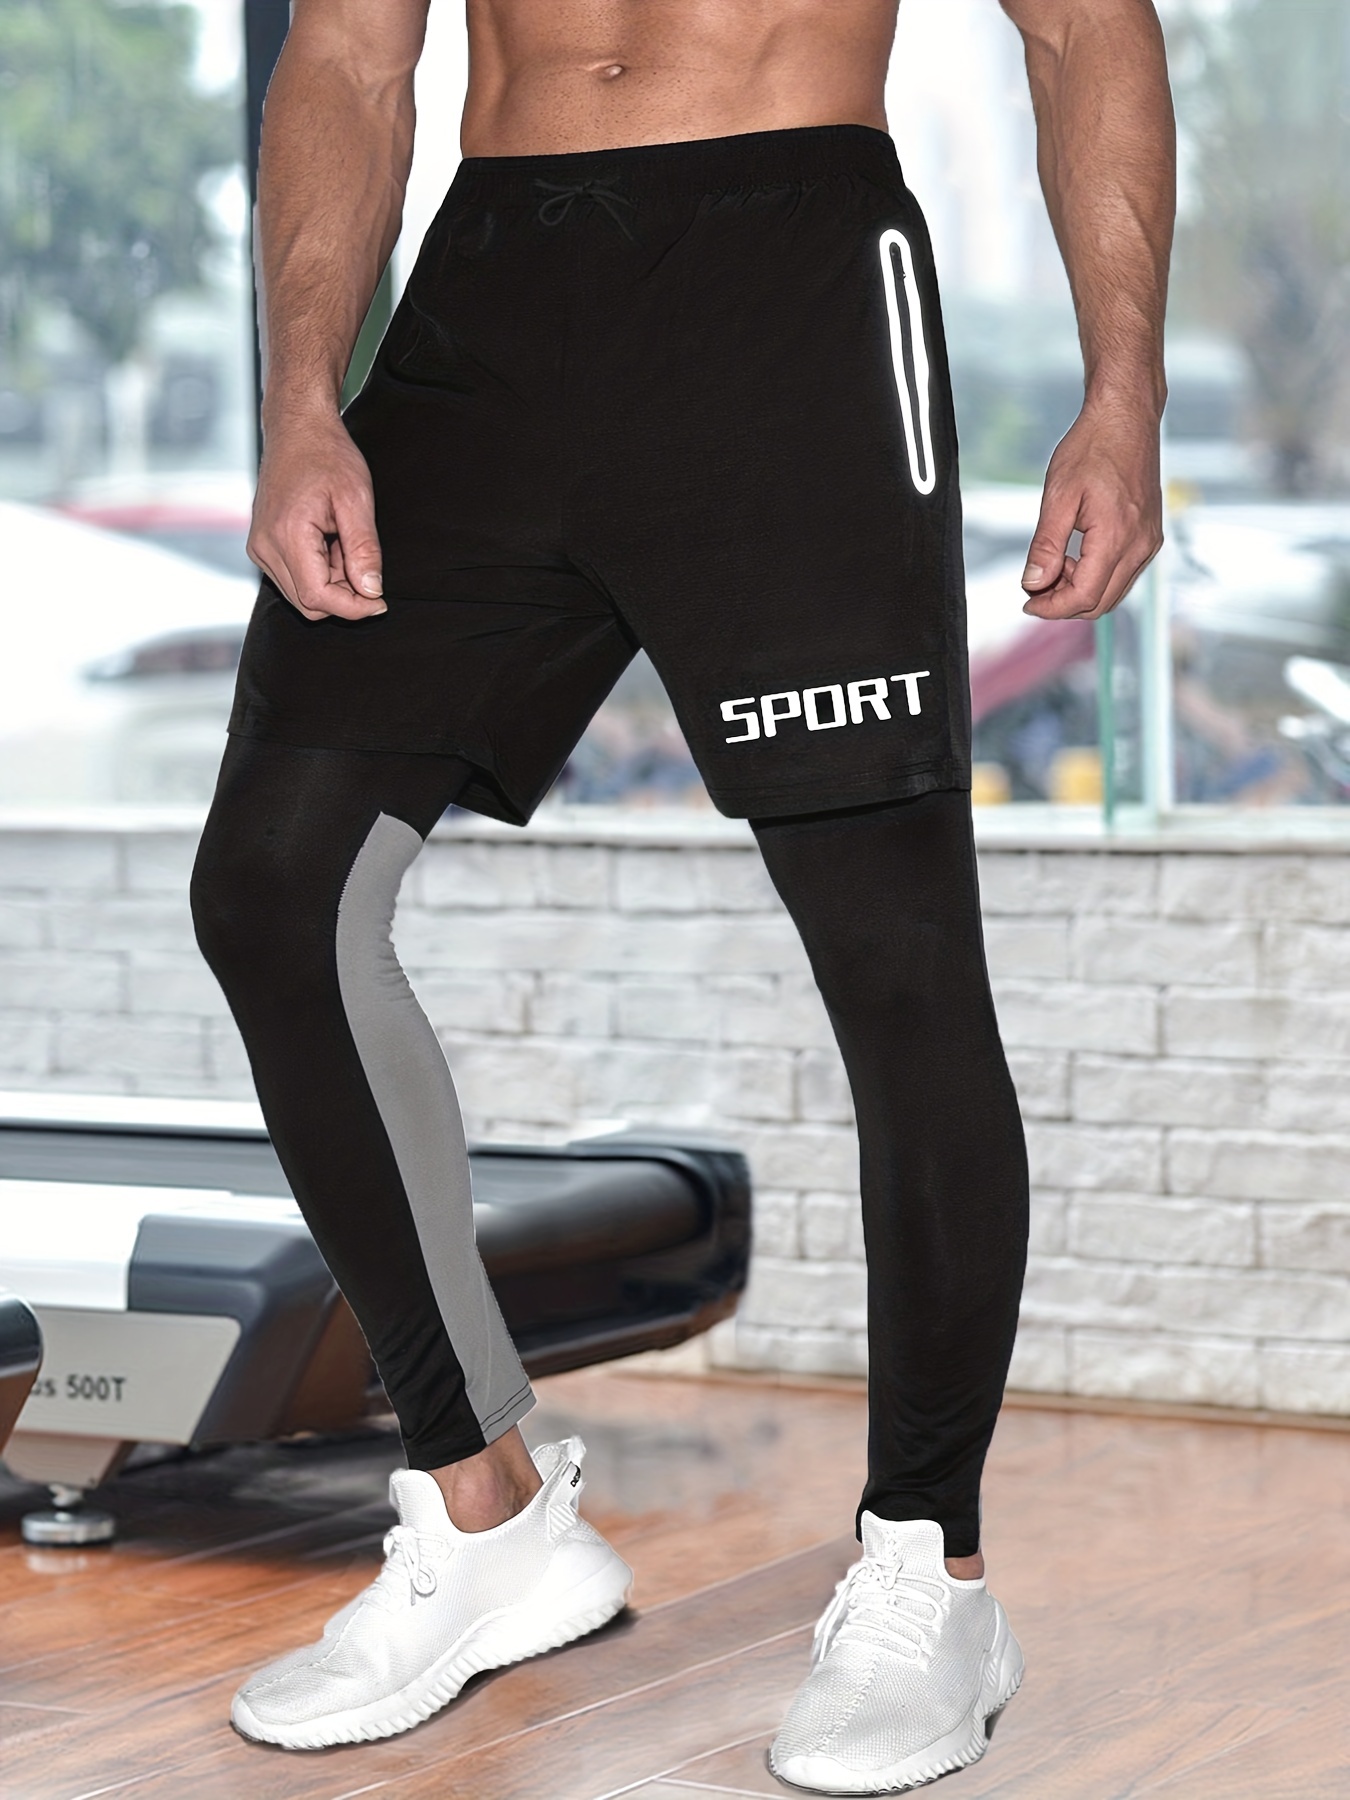 Men's Sweatpants Set, Fashion Alphabets Print Shorts & Color Block Leggings  2-in-1 Sports Stretch Pants